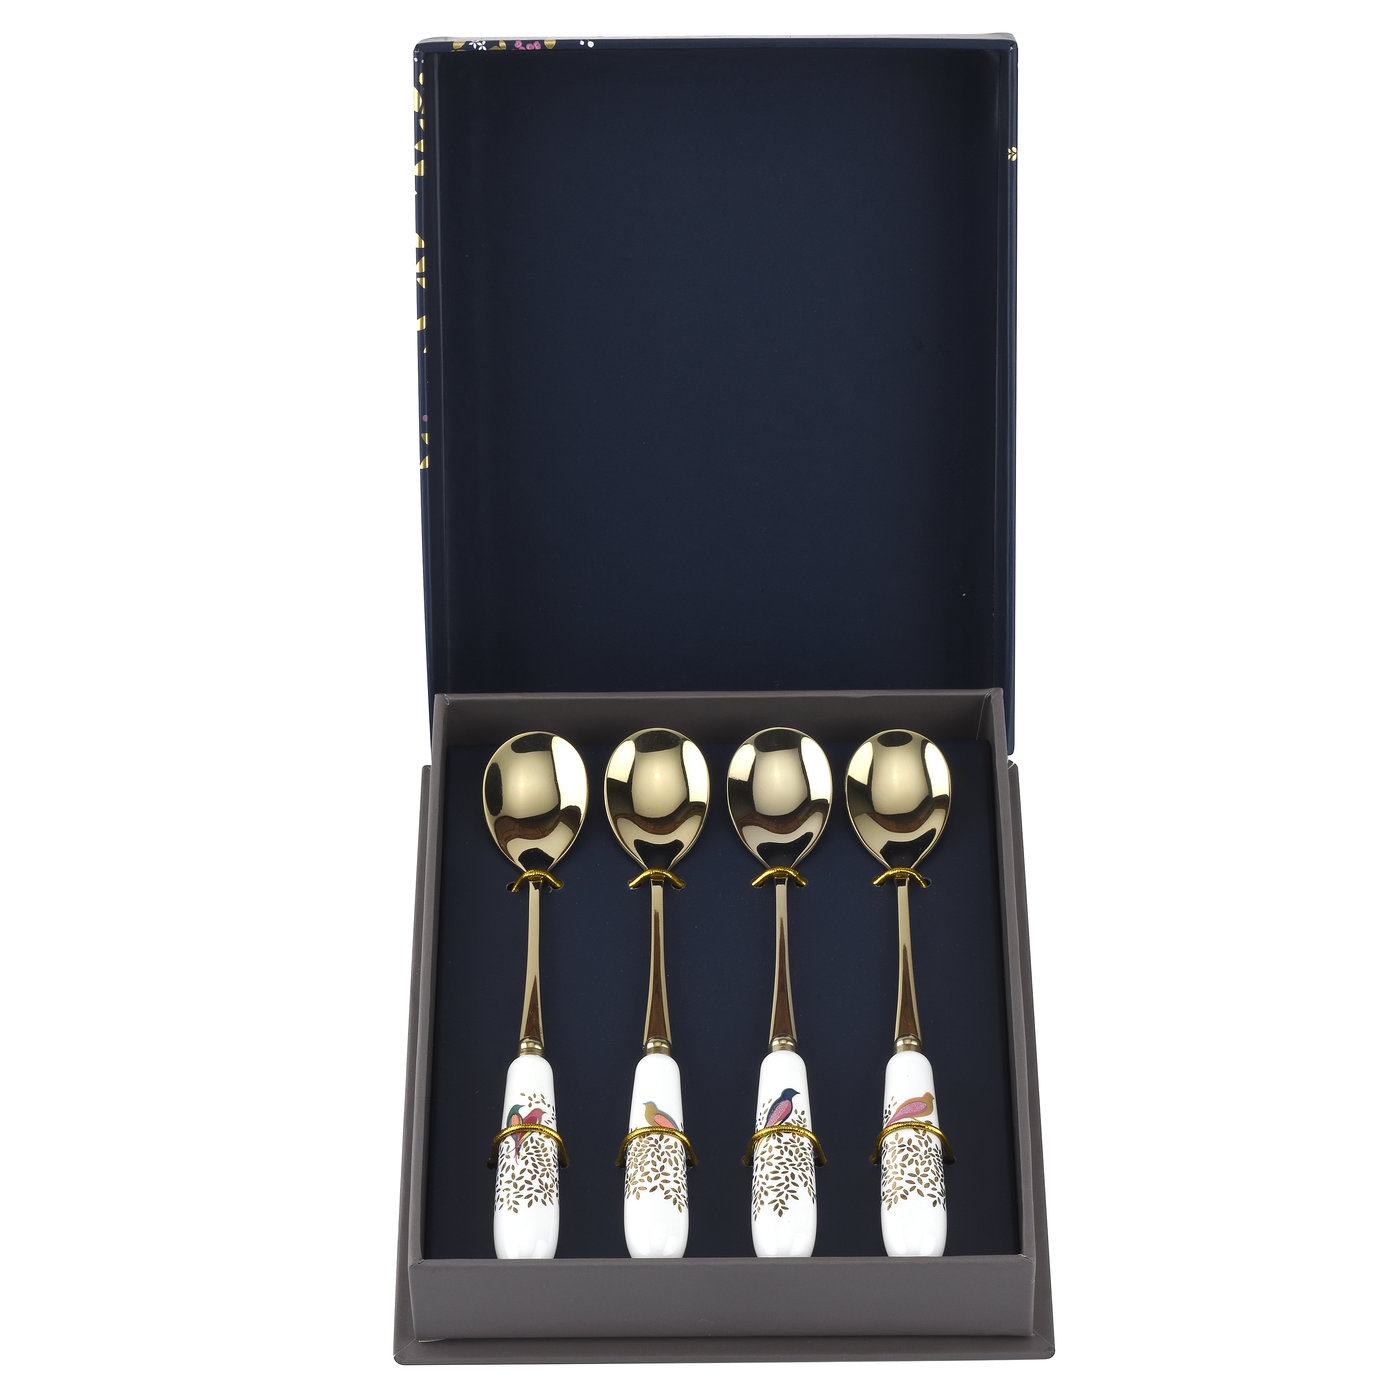 포트메리온 '사라 밀러 런던' 티스푼 4개 세트 Sara Miller London for Portmeirion Chelsea Collection Tea Spoons Set of 4 Assorted Design